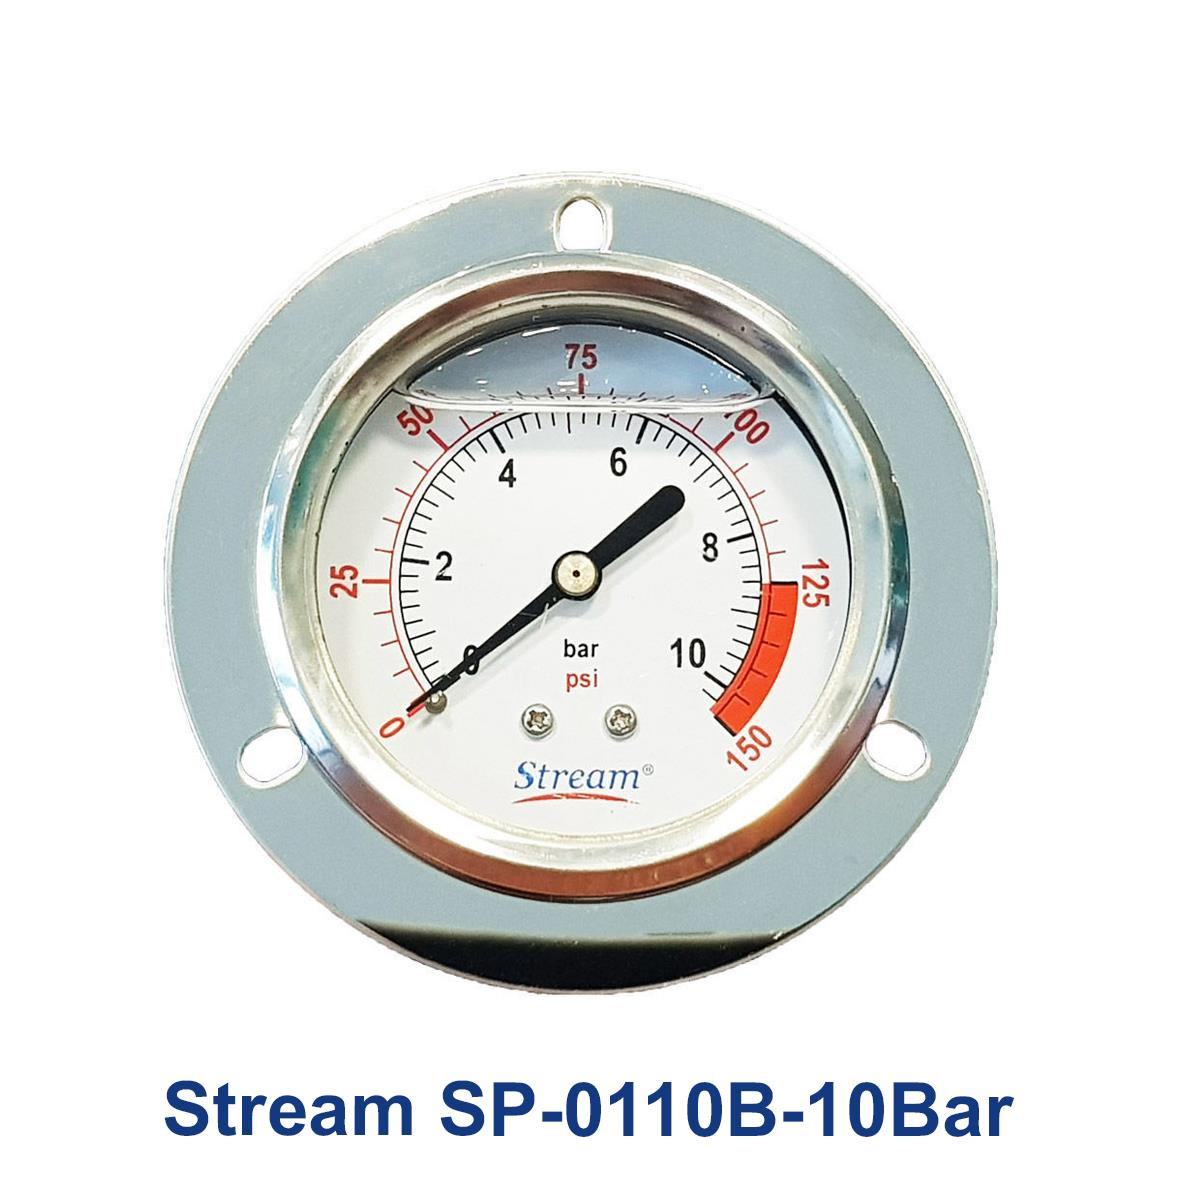 Stream-SP-0110B-10Bar